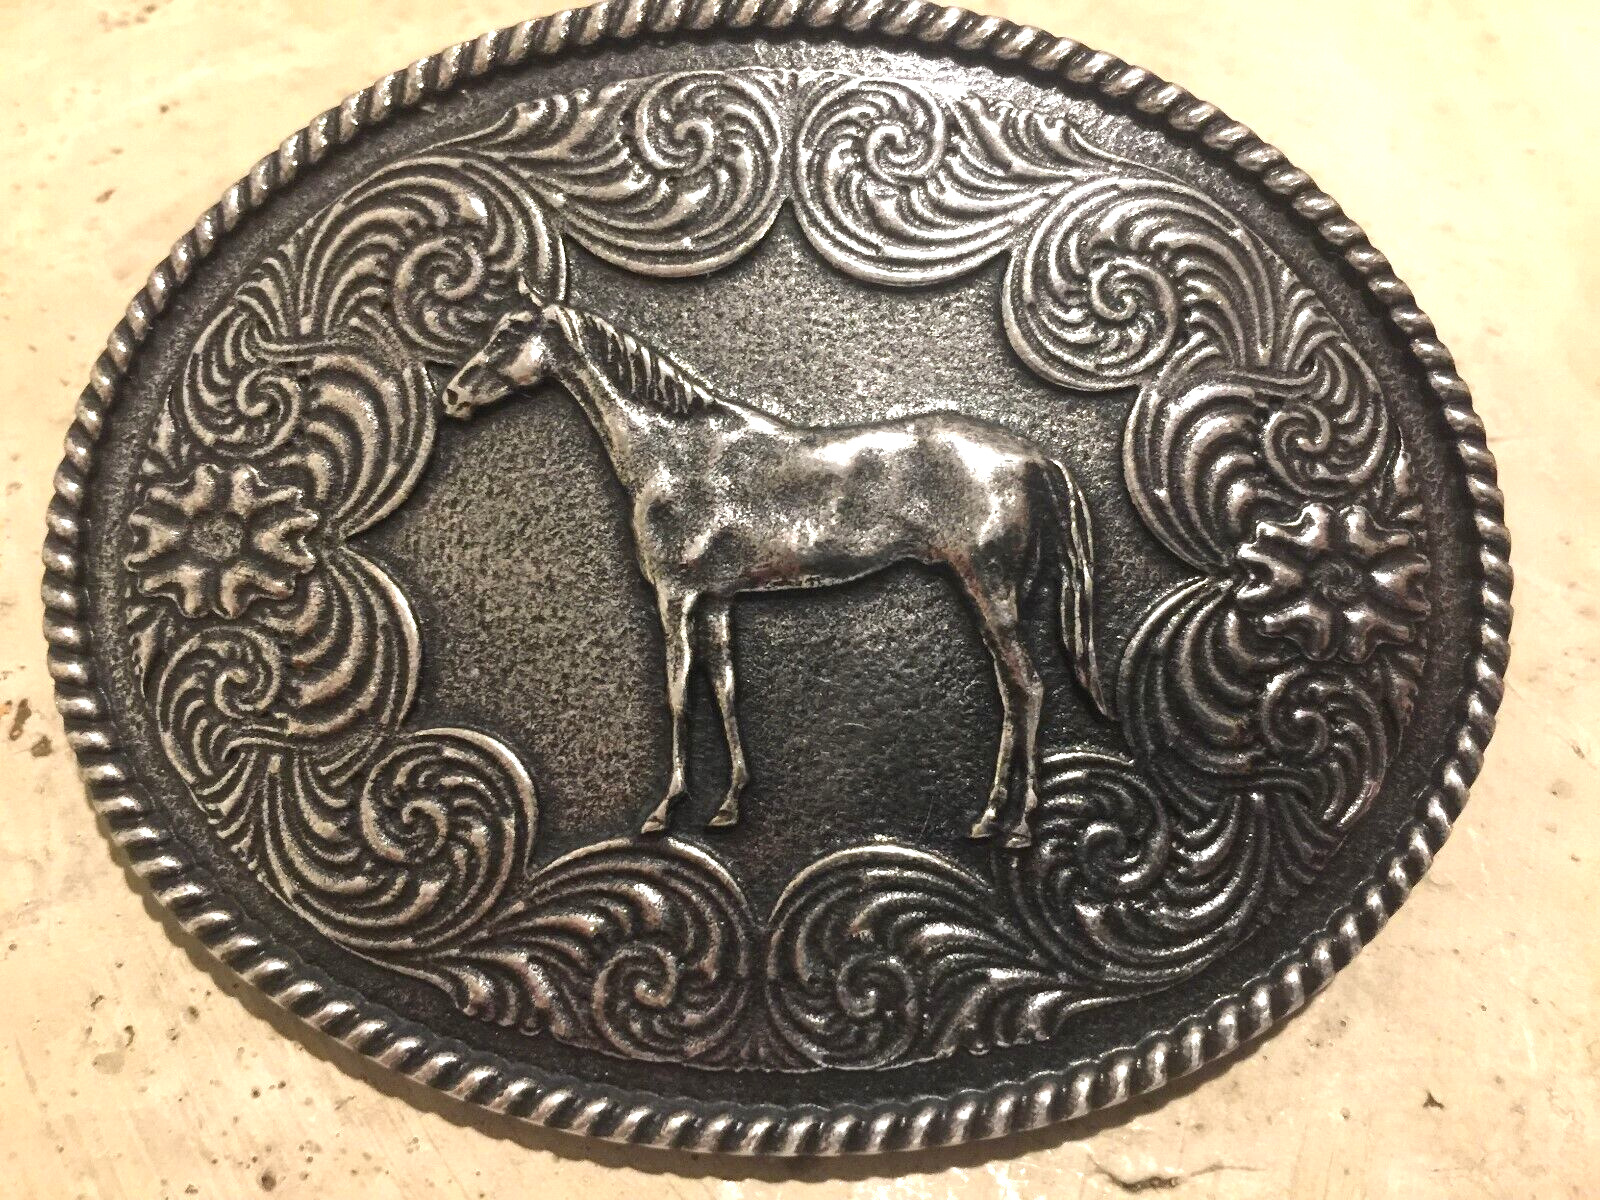 Taylor Brands Rare Western Edge Quarter Horse Antique Belt Buckle Vintage